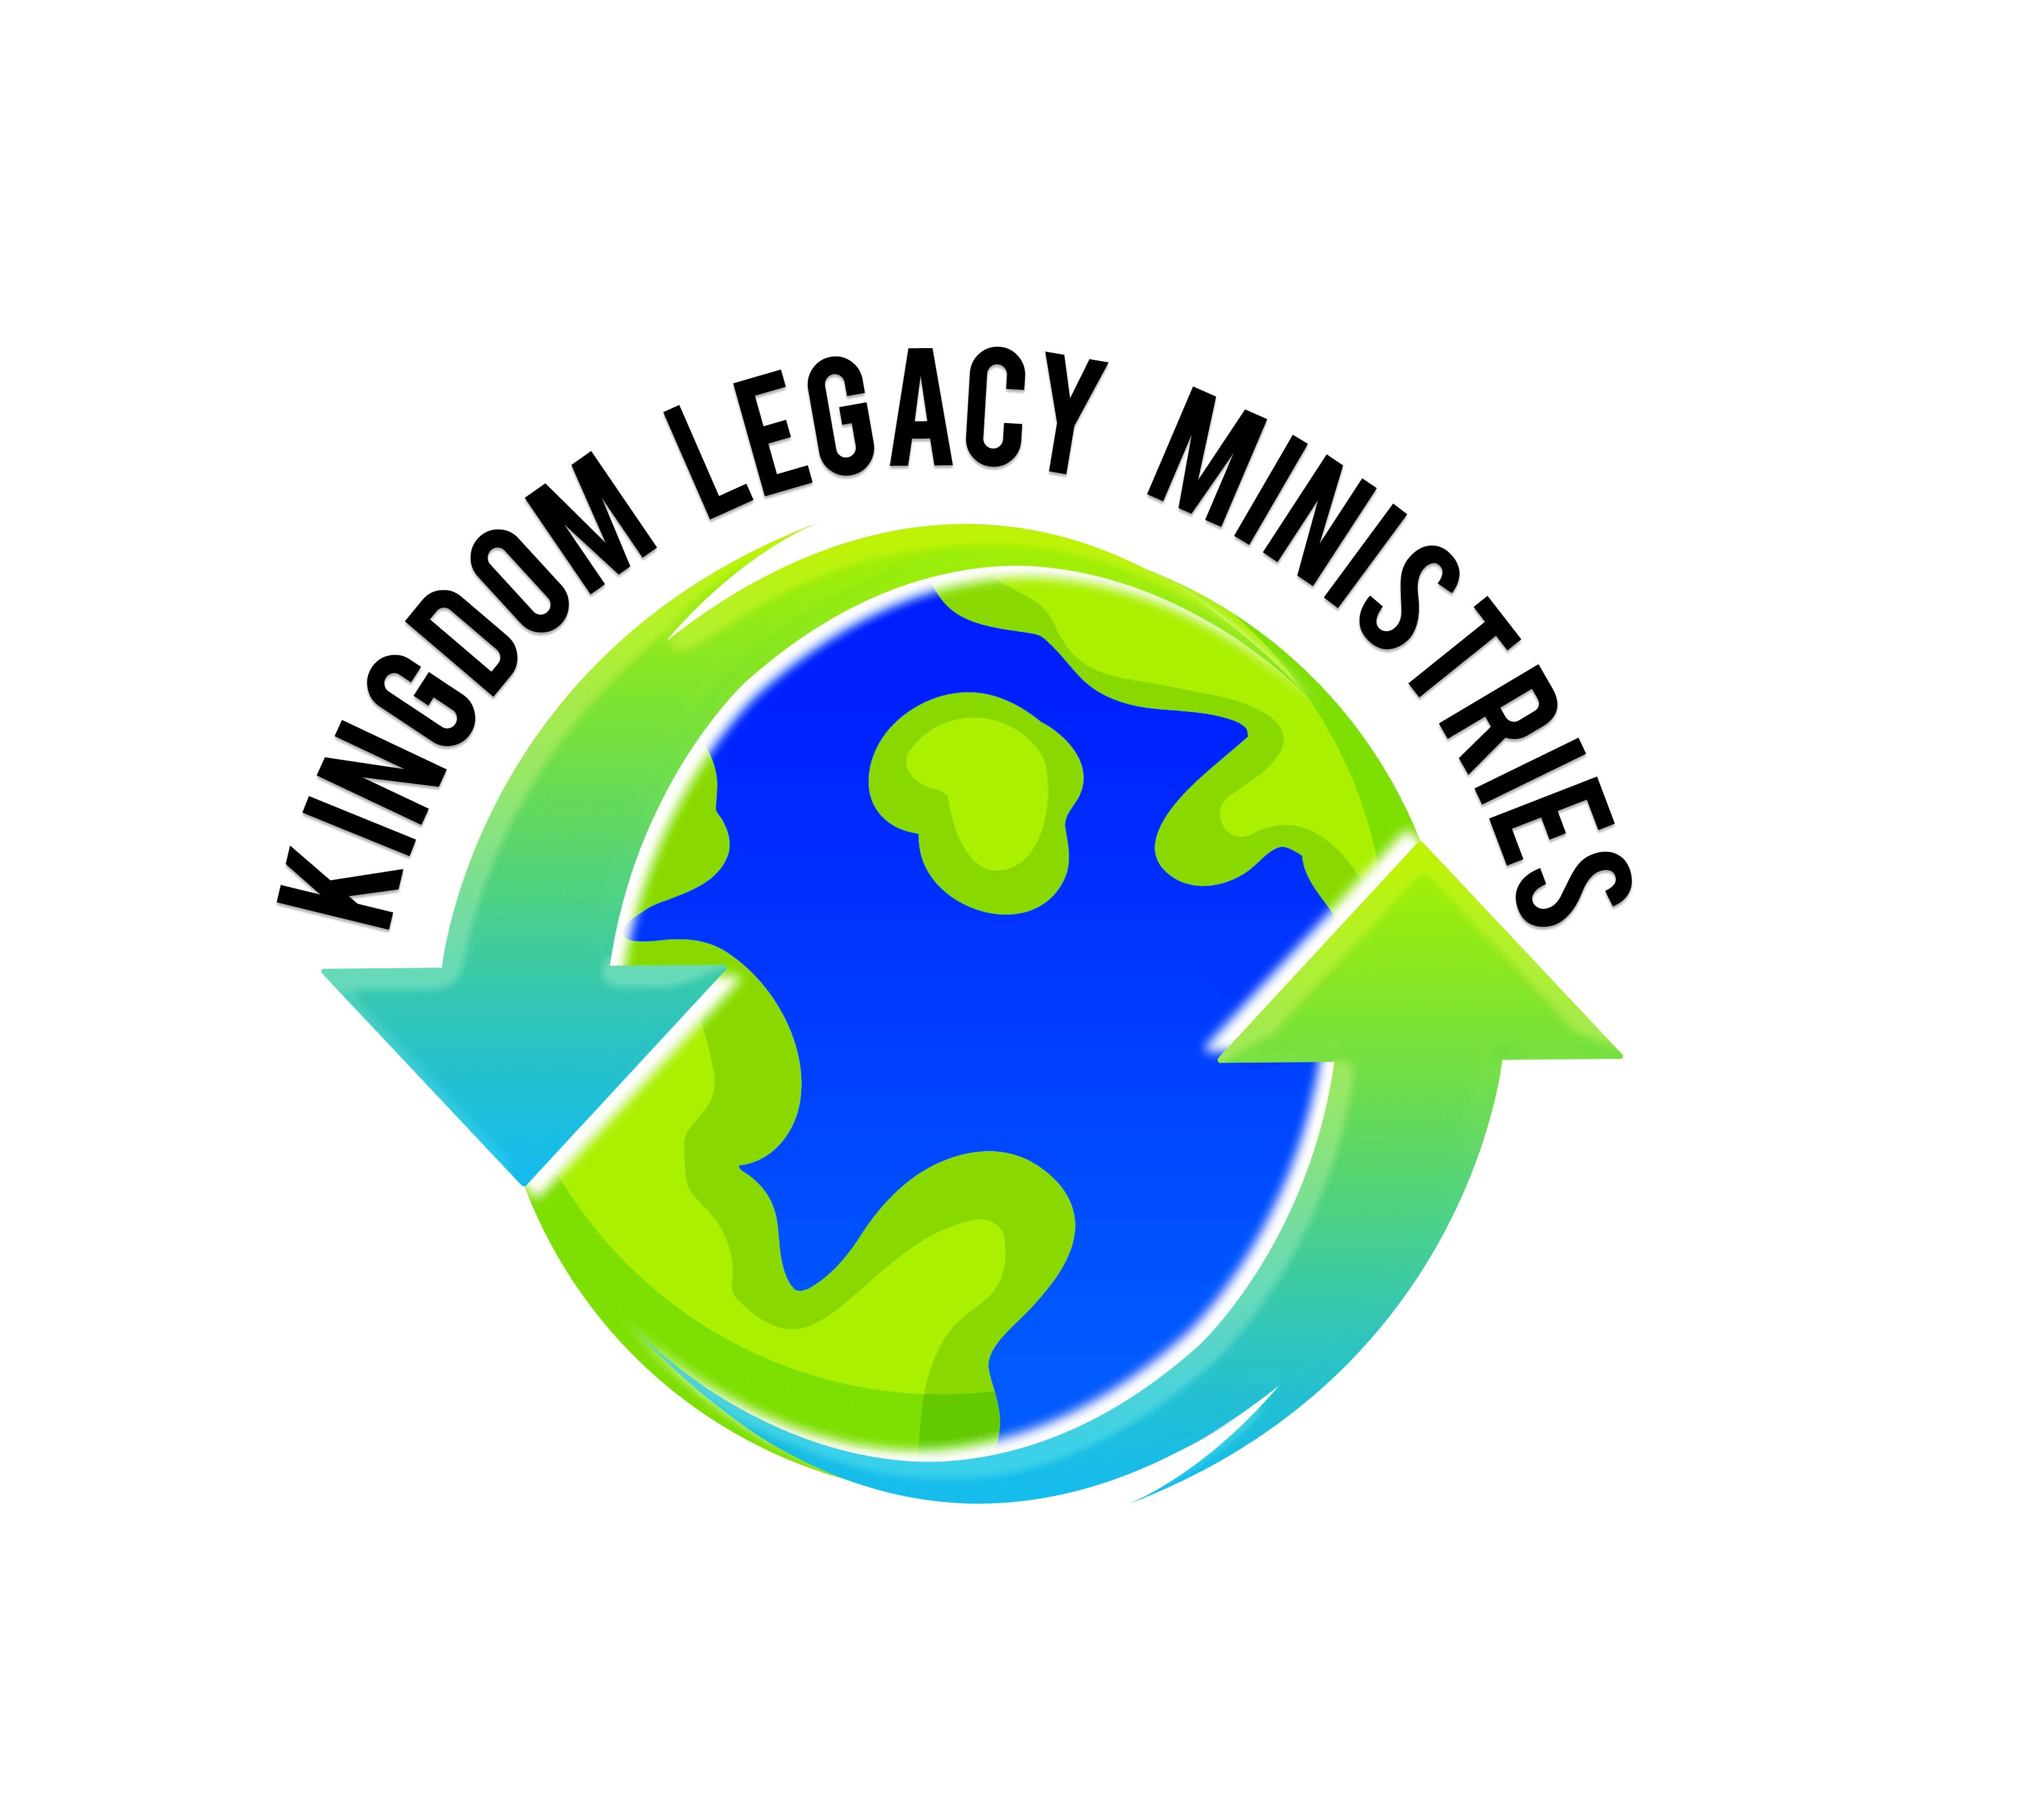 Home Kingdom Legacy Ministries